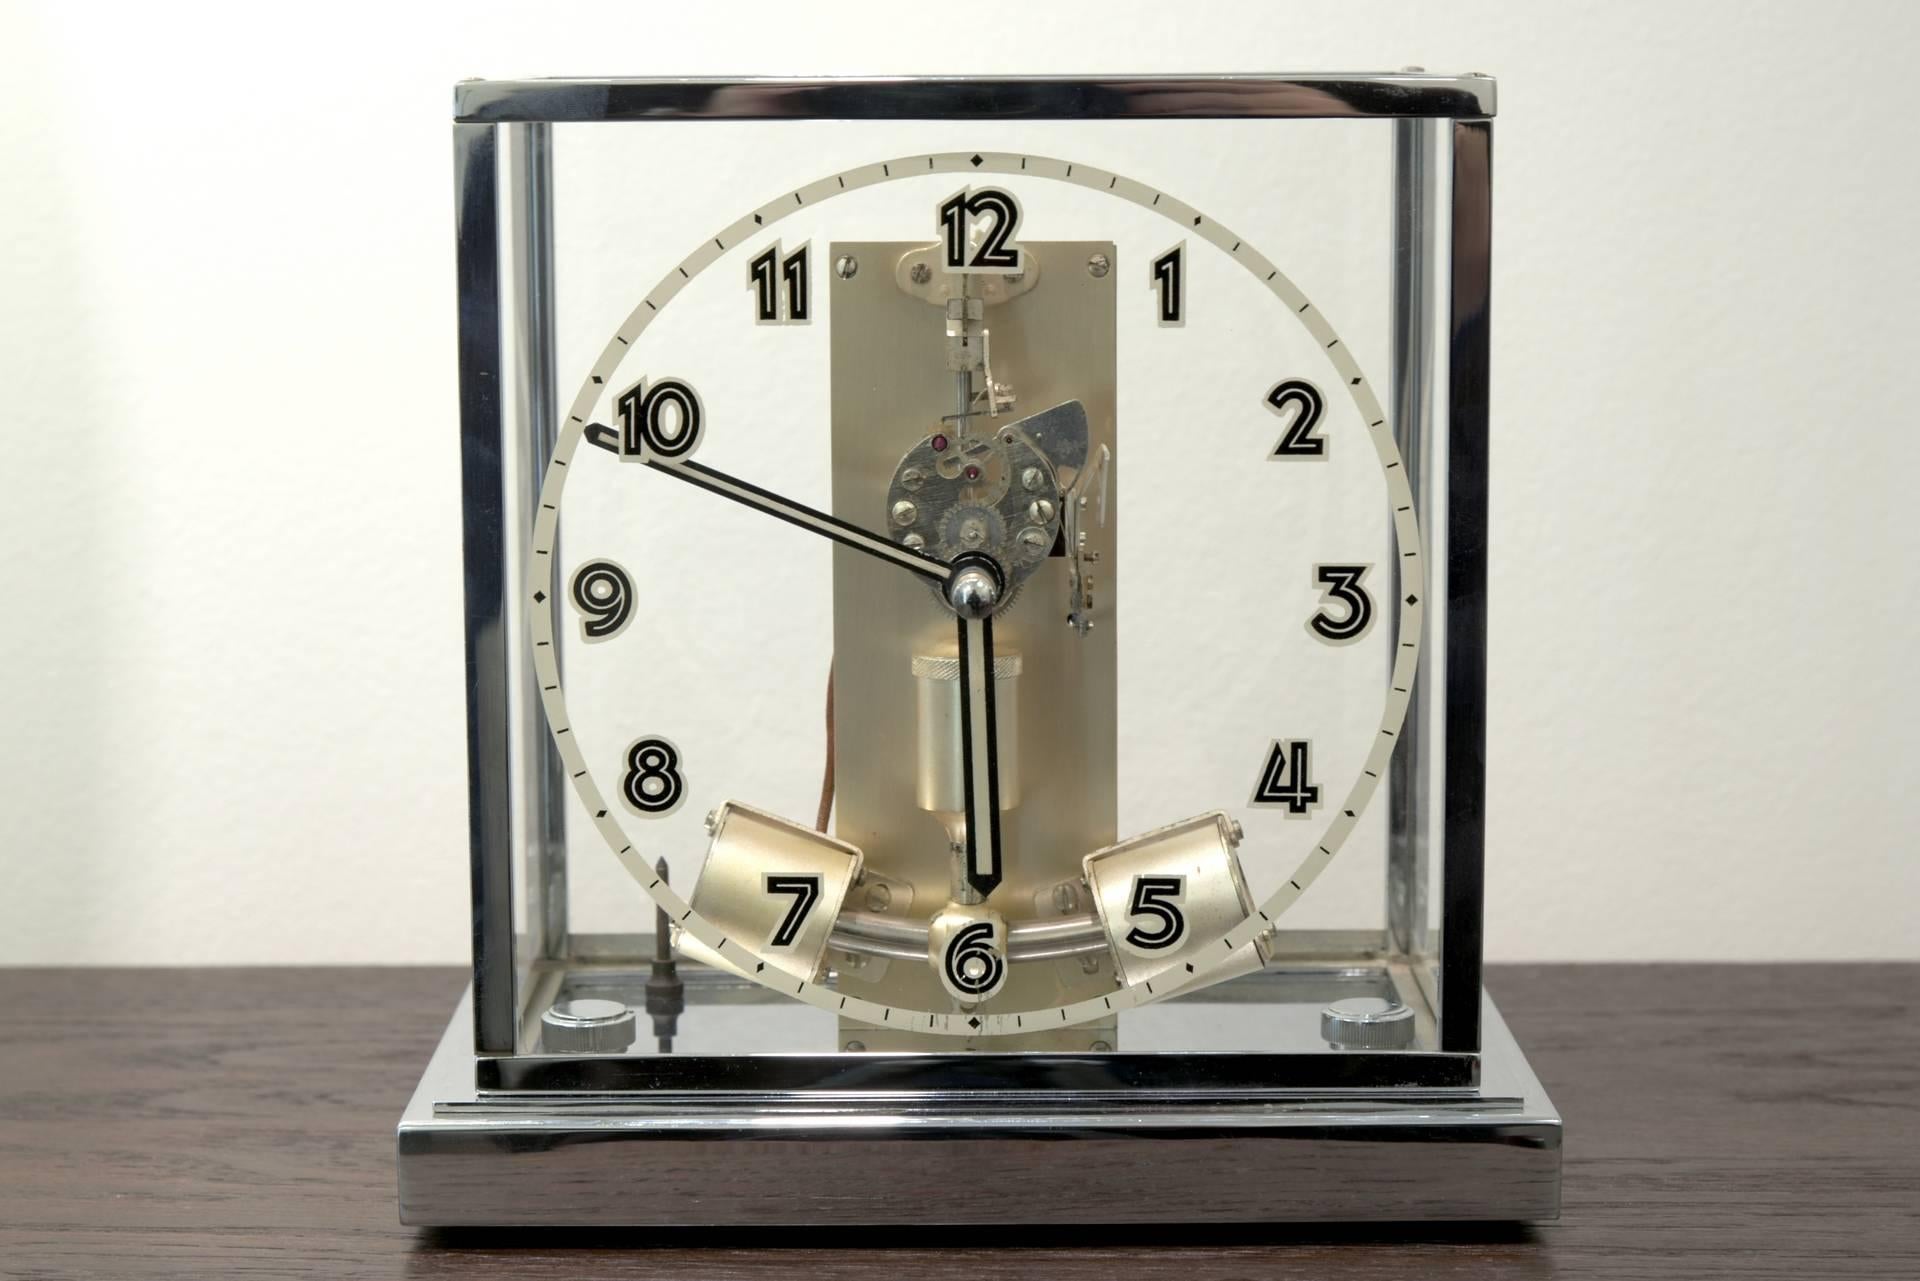 L'horloge de table ATO de Junghans de la Forêt Noire se présente en bon état. À la fin des années 1920, Junghans a acquis les brevets de Léon Hatot, Paris, pour la construction de montres à alimentation électromagnétique. Bonne qualité, fiable